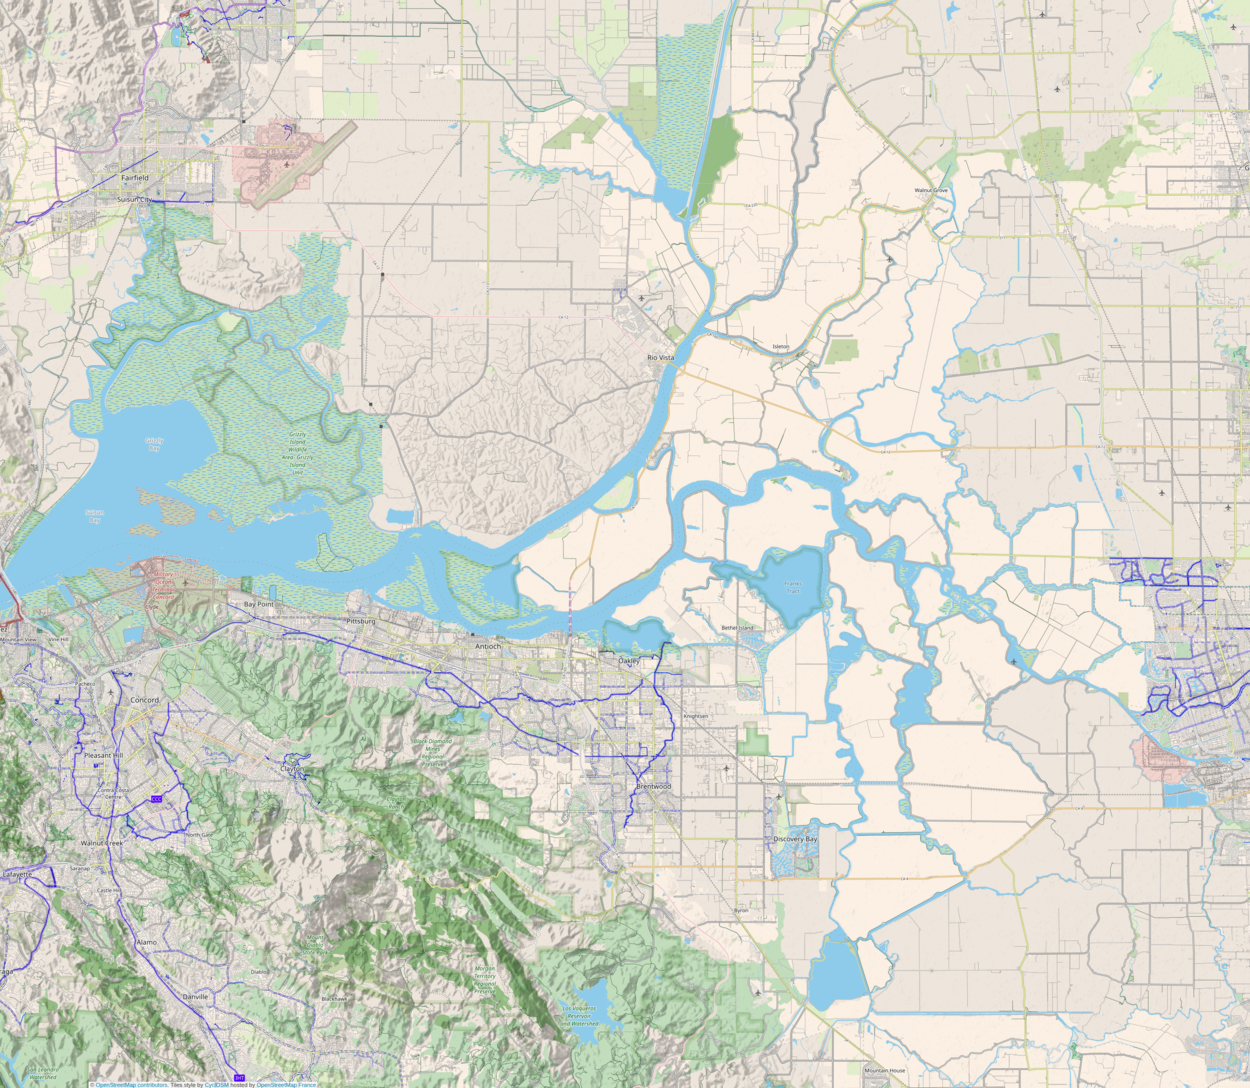 Sacramento–San Joaquin River Delta is located in Sacramento-San Joaquin River Delta